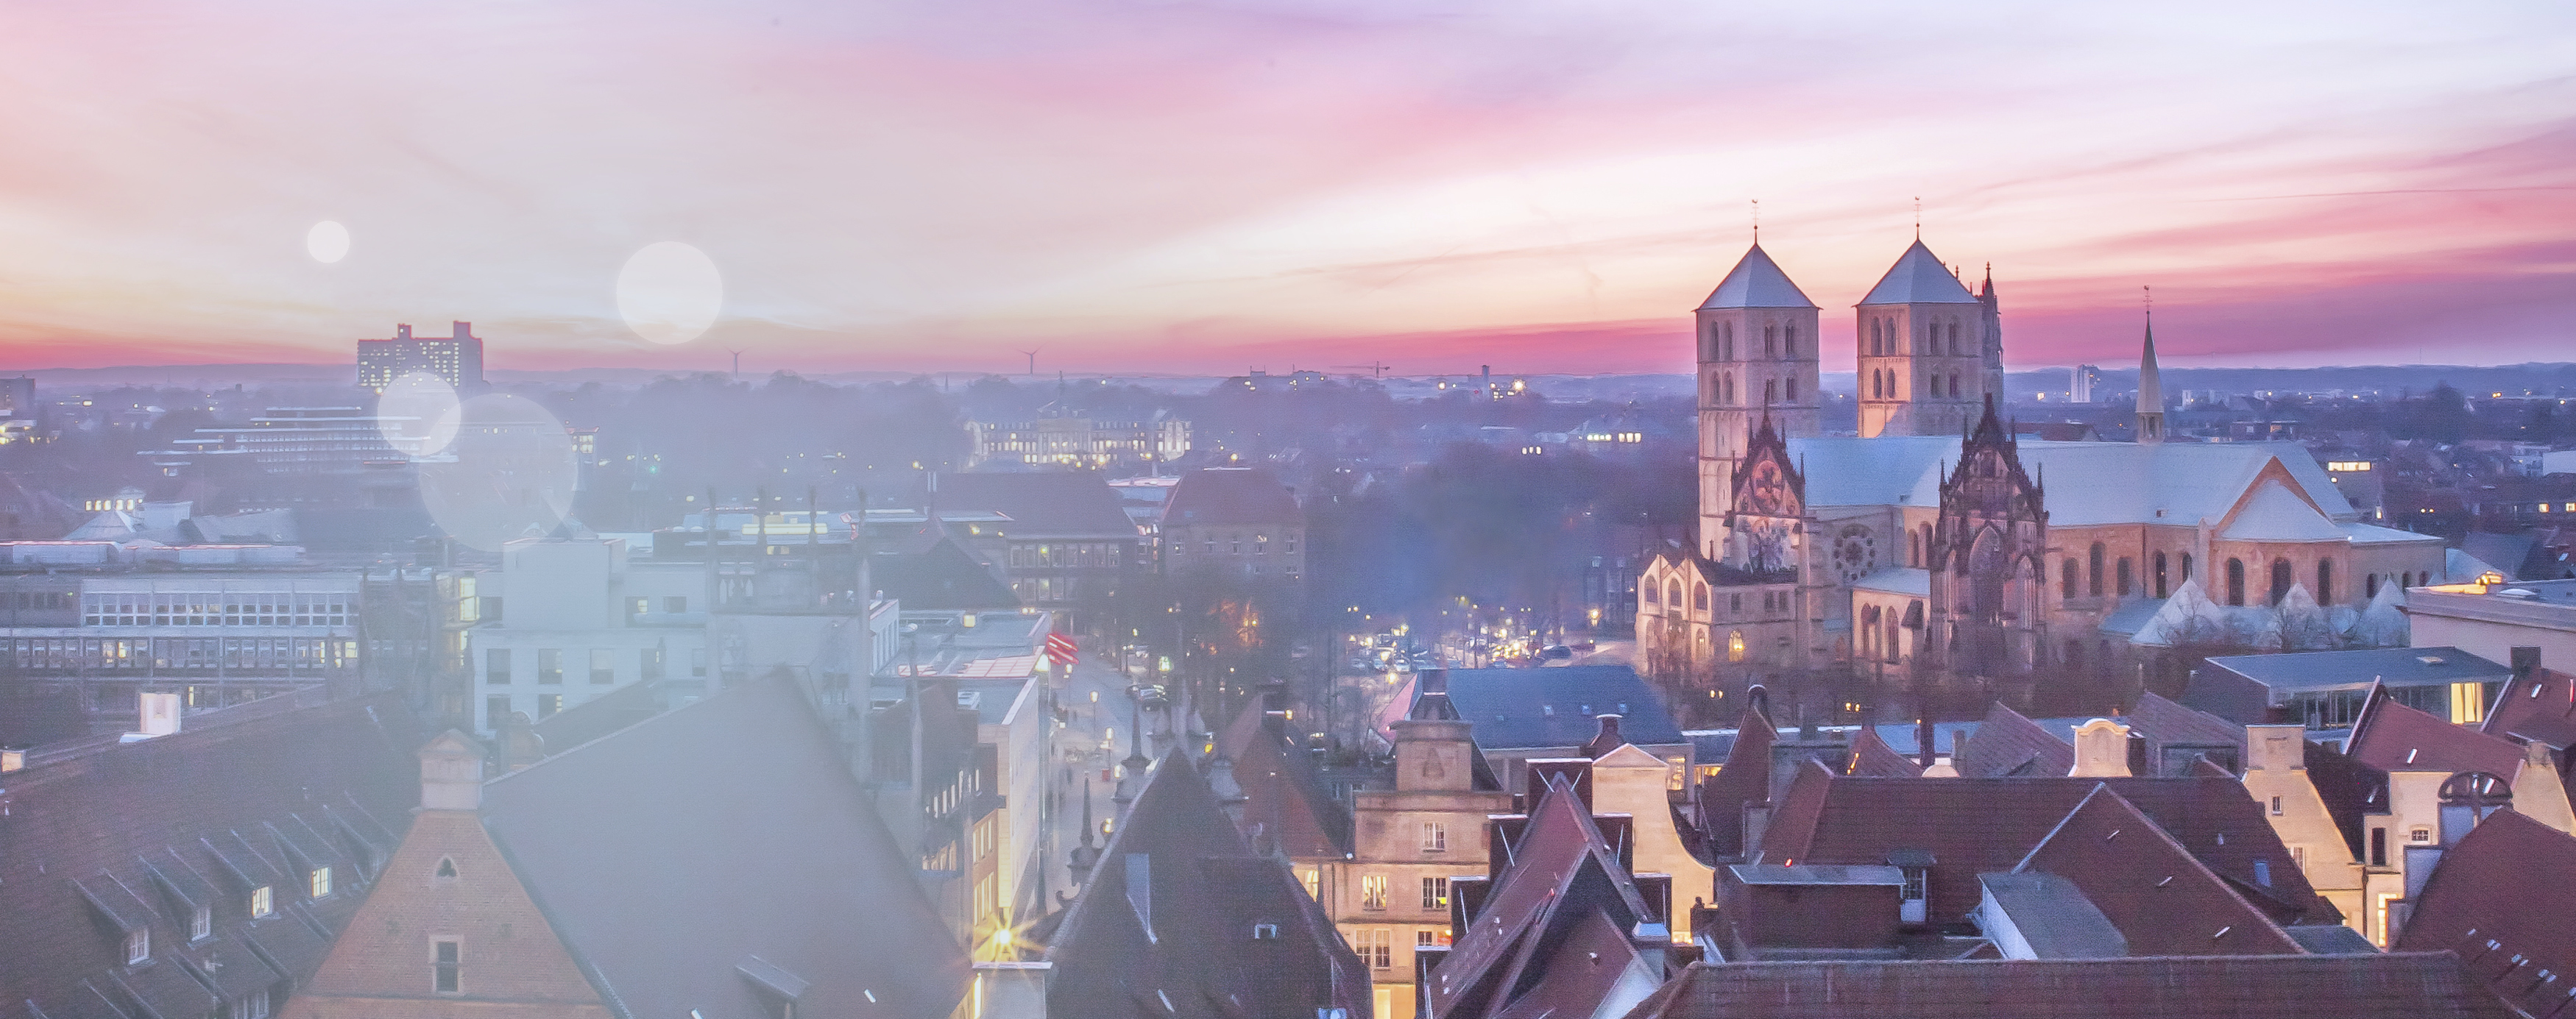 Ein schöner  lila- und rosafarbener Sonnenuntergang aus Sicht des münsterischen Stadthauses, zu sehen sind die Dächer von Münster inklusive des St.-Paulus-Doms.